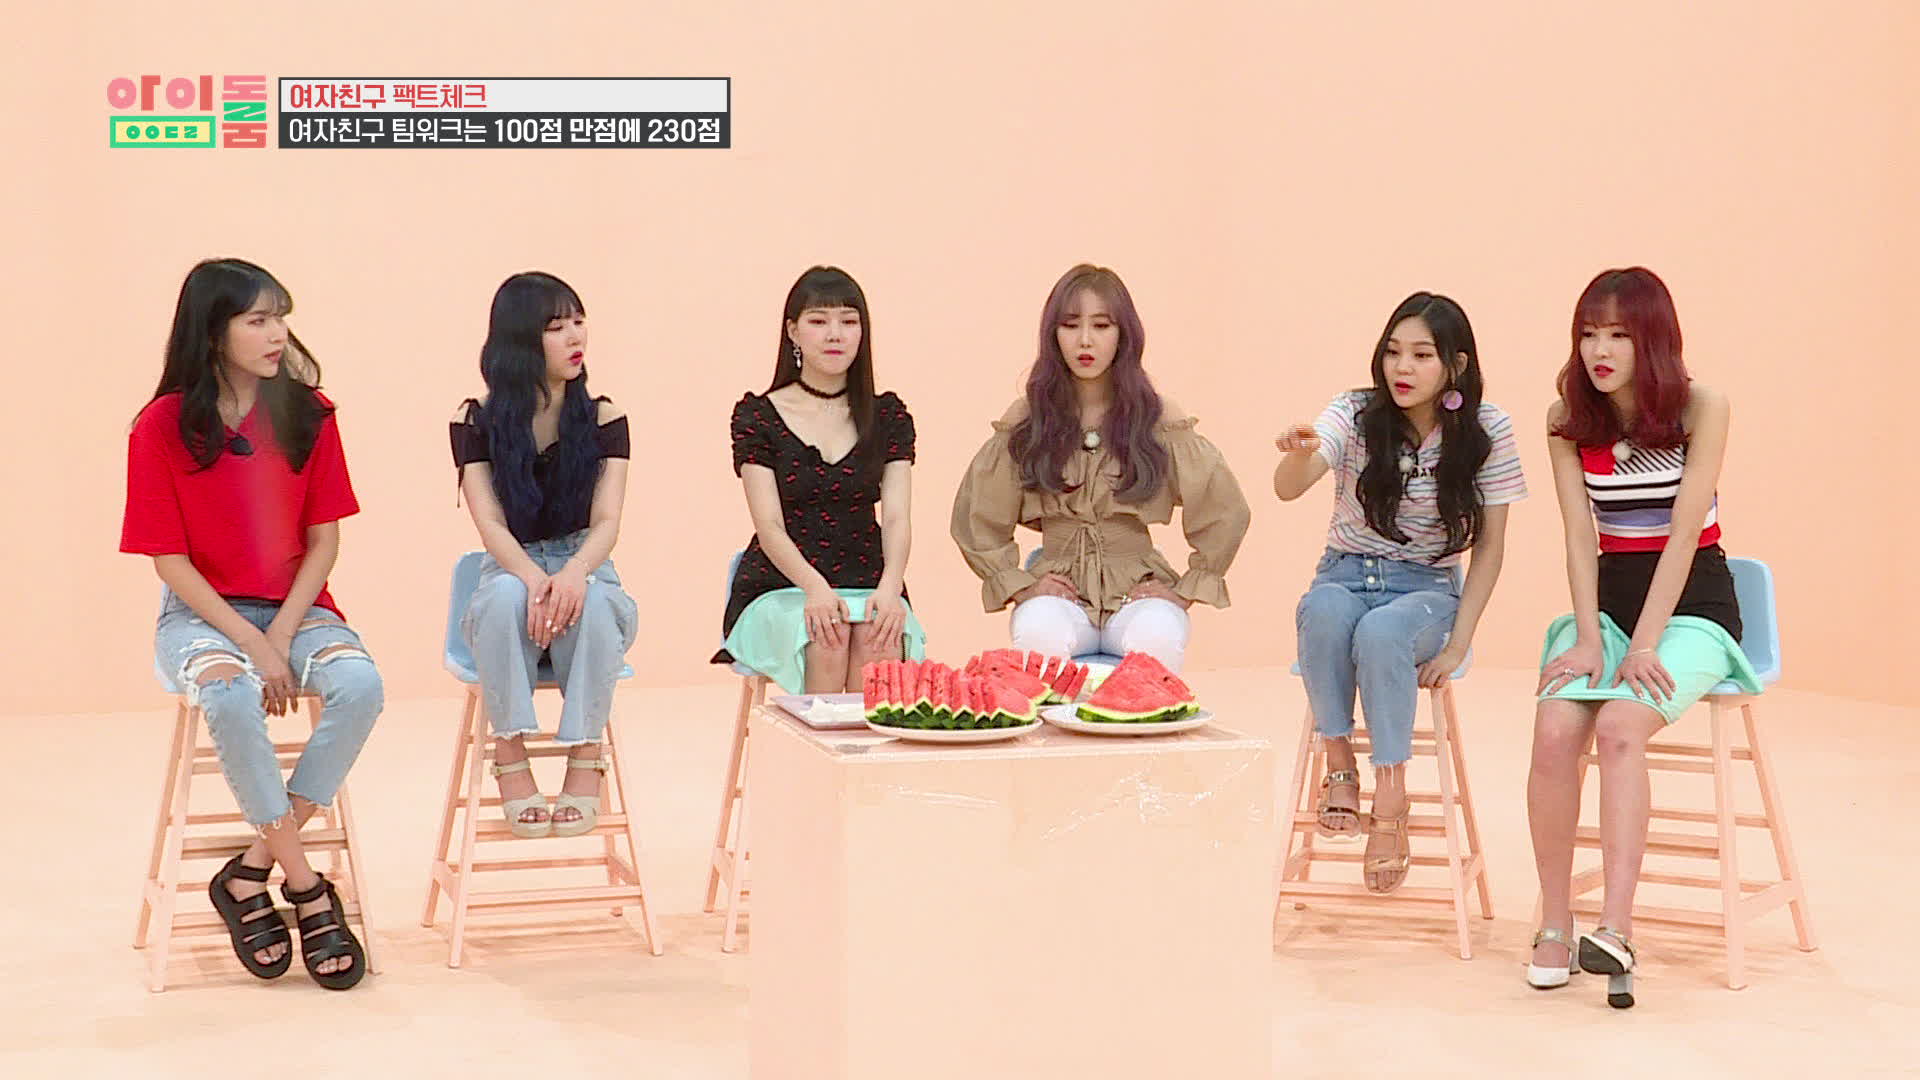 아이돌룸(IDOL ROOM) 13회 - 여자친구, 수박 먹방 냠냠 (부제: 팀워크와 수박씨의 상관관계) GFriend eating watermelon 